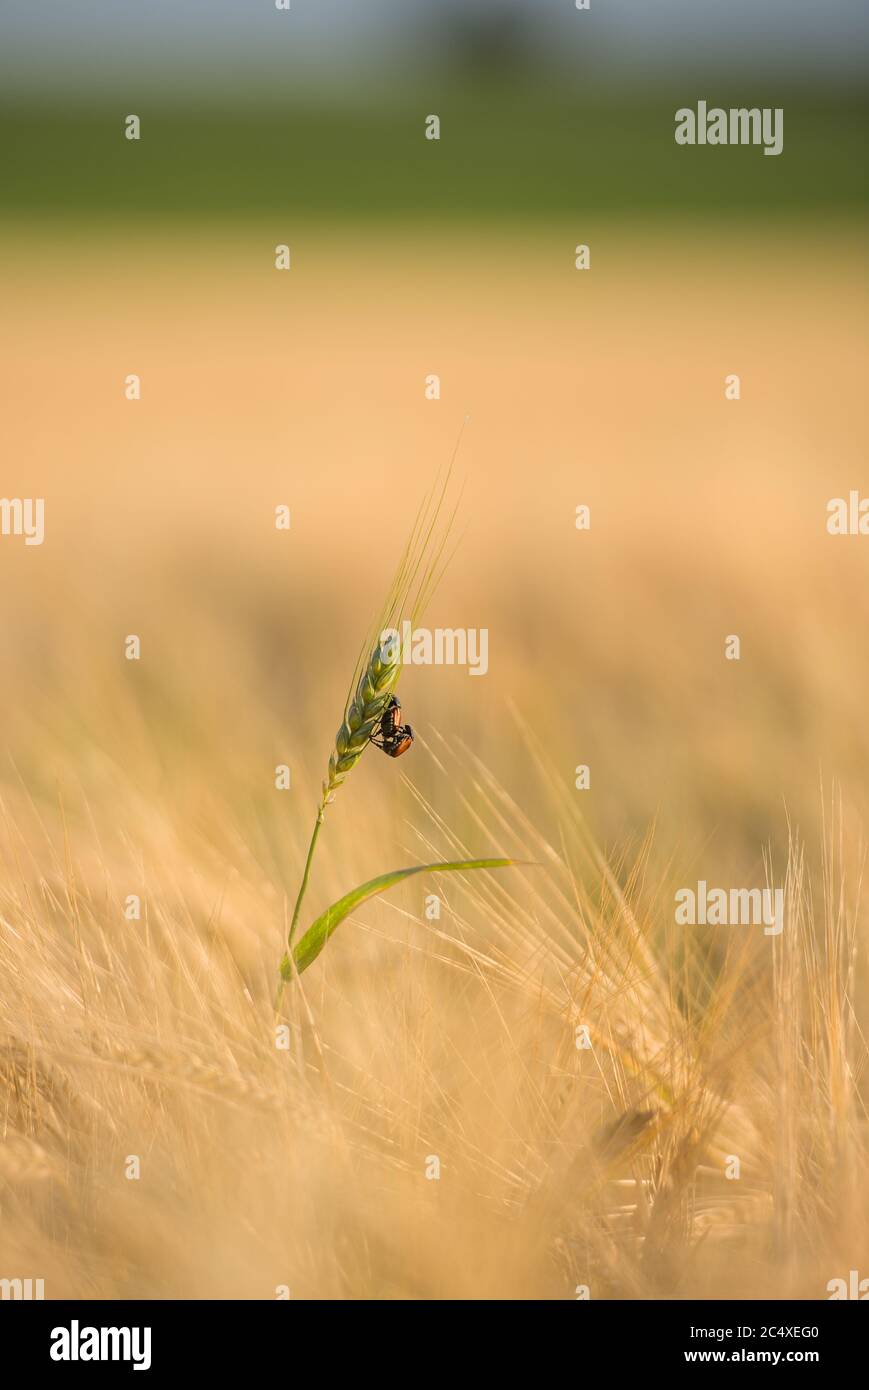 zwei Käfer übereinander auf einer Ähre im Getreidefeld Stock Photo